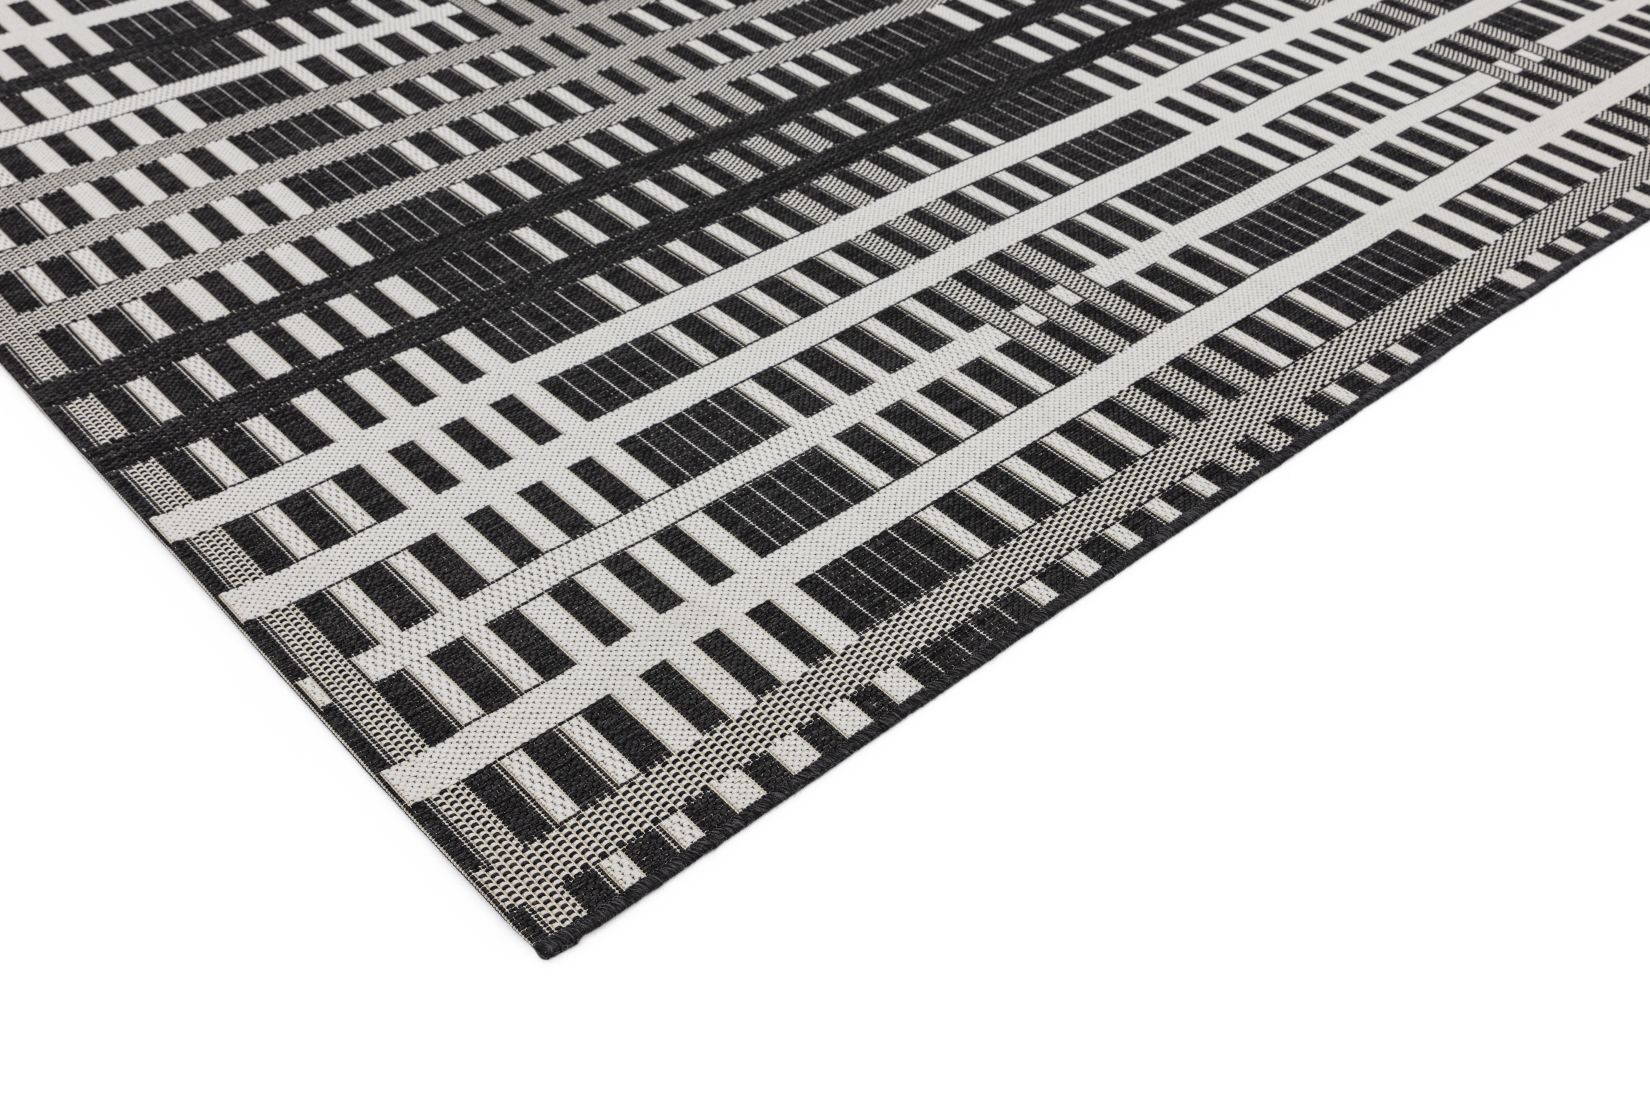 Patio In/Outdoor Geometric Rug - Black Grid PAT22